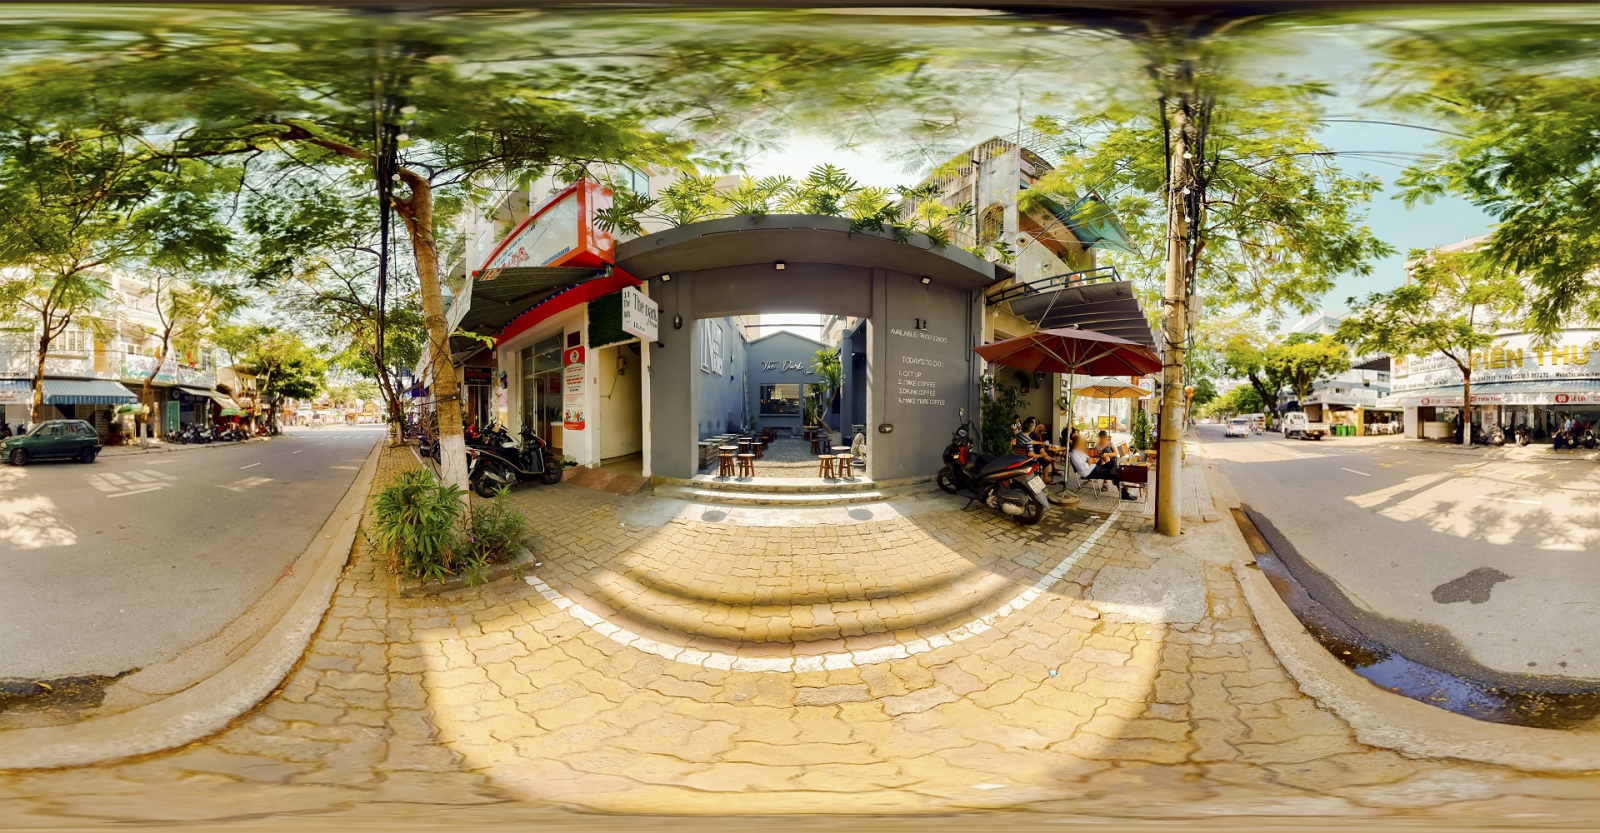 Dịch Vụ Chụp Ảnh 360 Độ Chuyên Nghiệp Tại Đà Nẵng | Vr360